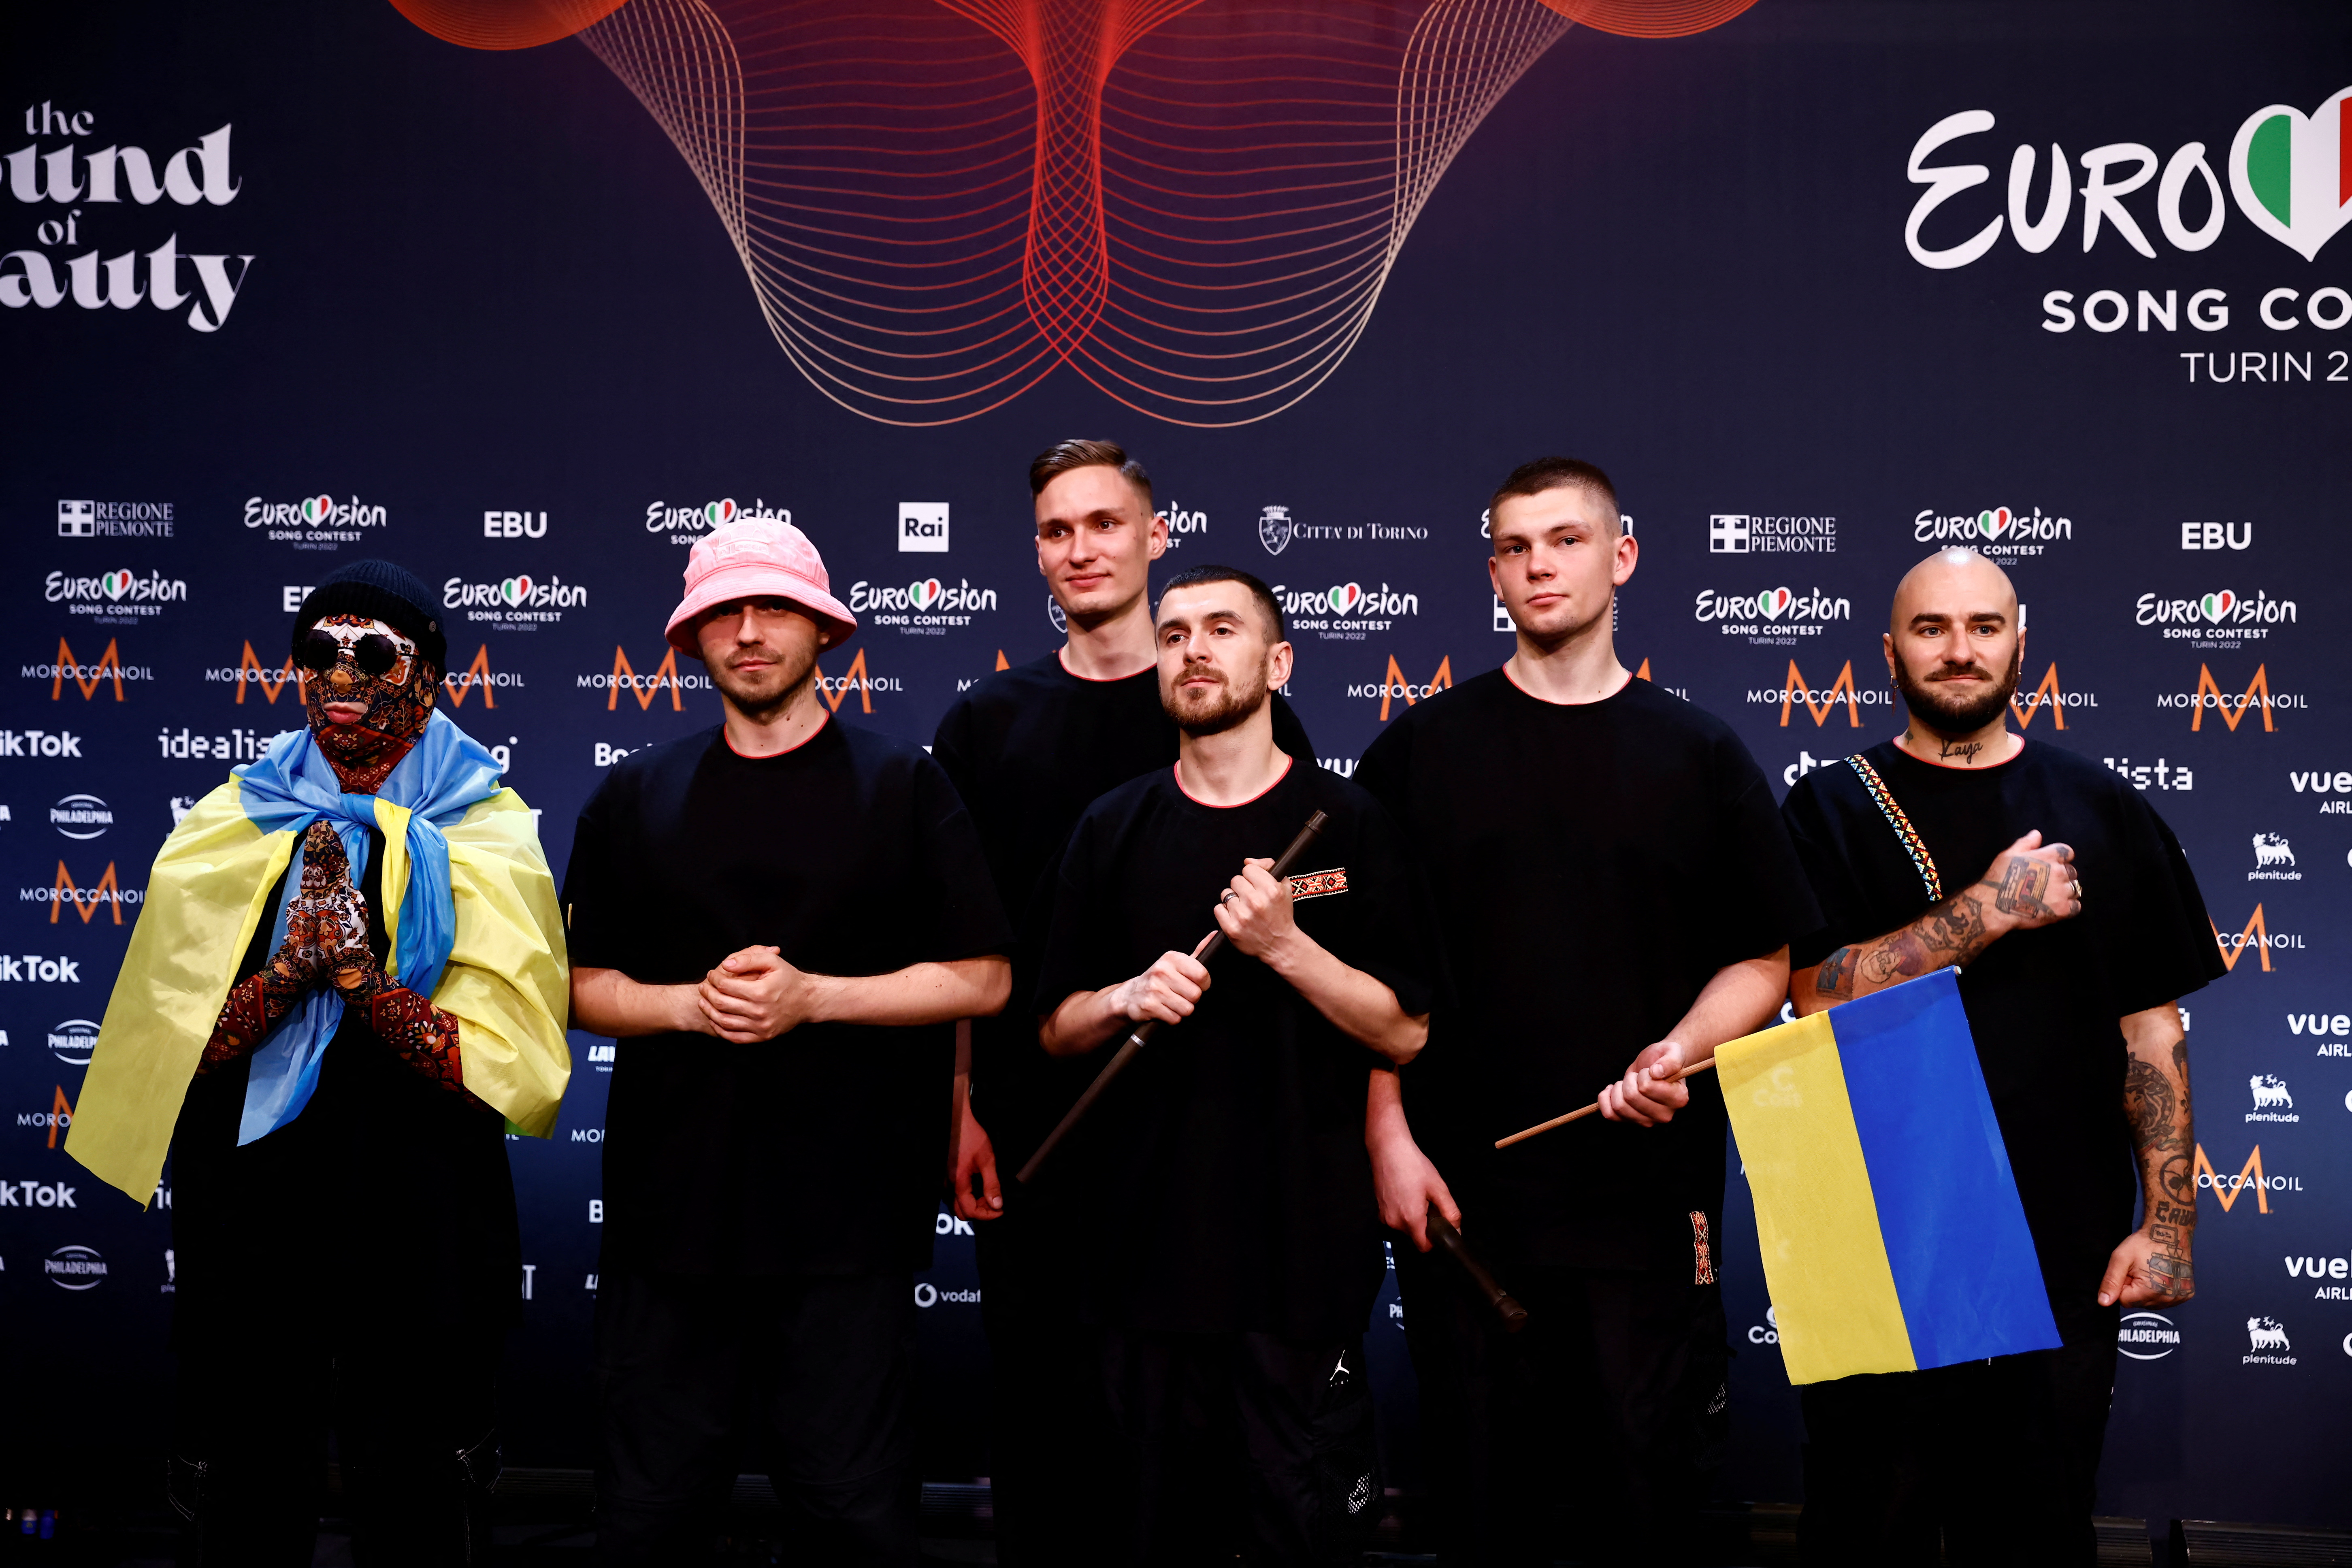 La banda de seis miembros recibió un permiso especial para salir del país y representar a Ucrania y la cultura ucraniana en el concurso de música. (REUTERS/Yara Nardi)